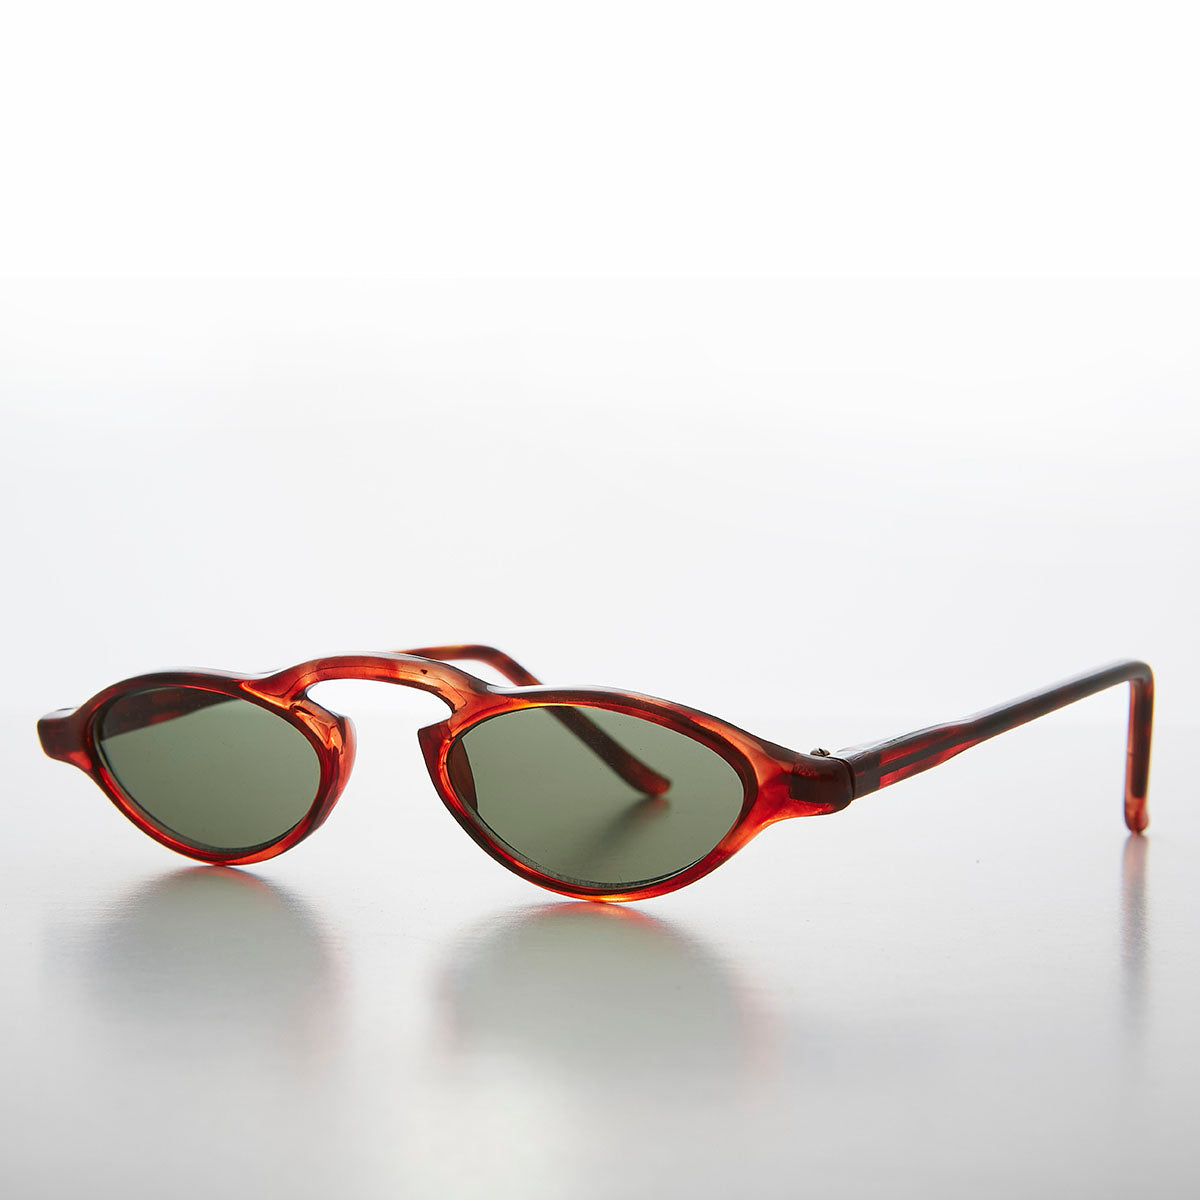 Small Slim Edgy Rare 90s Sleek Vintage Sunglasses